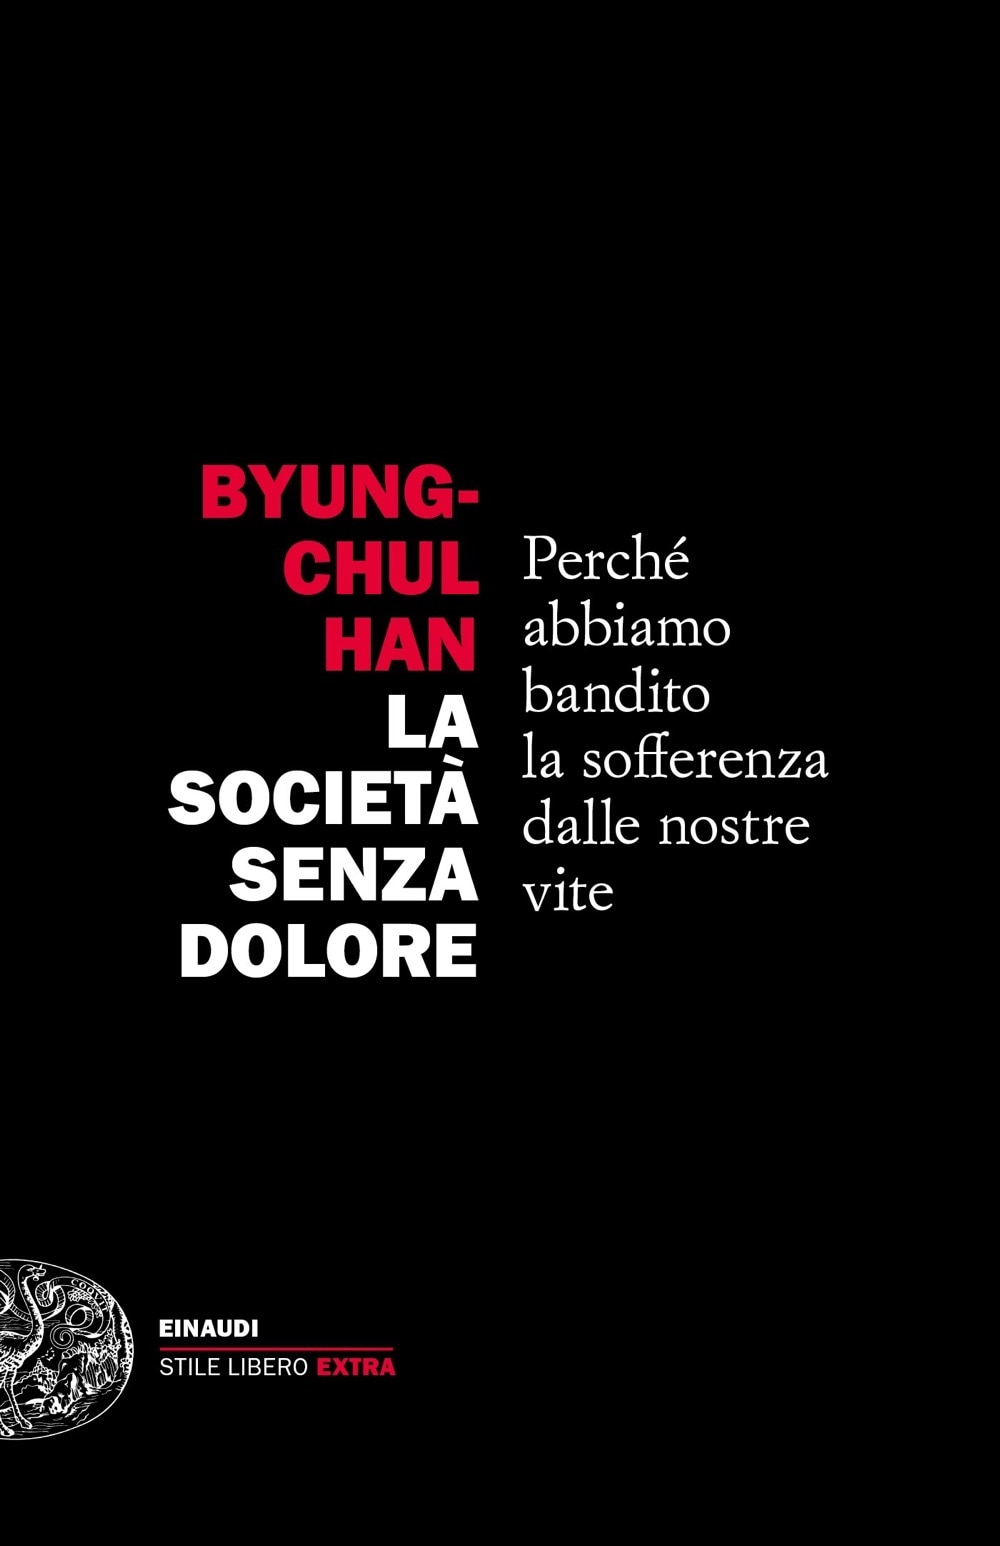 La società senza dolore, Byung-chul Han, Einaudi, 13 euro